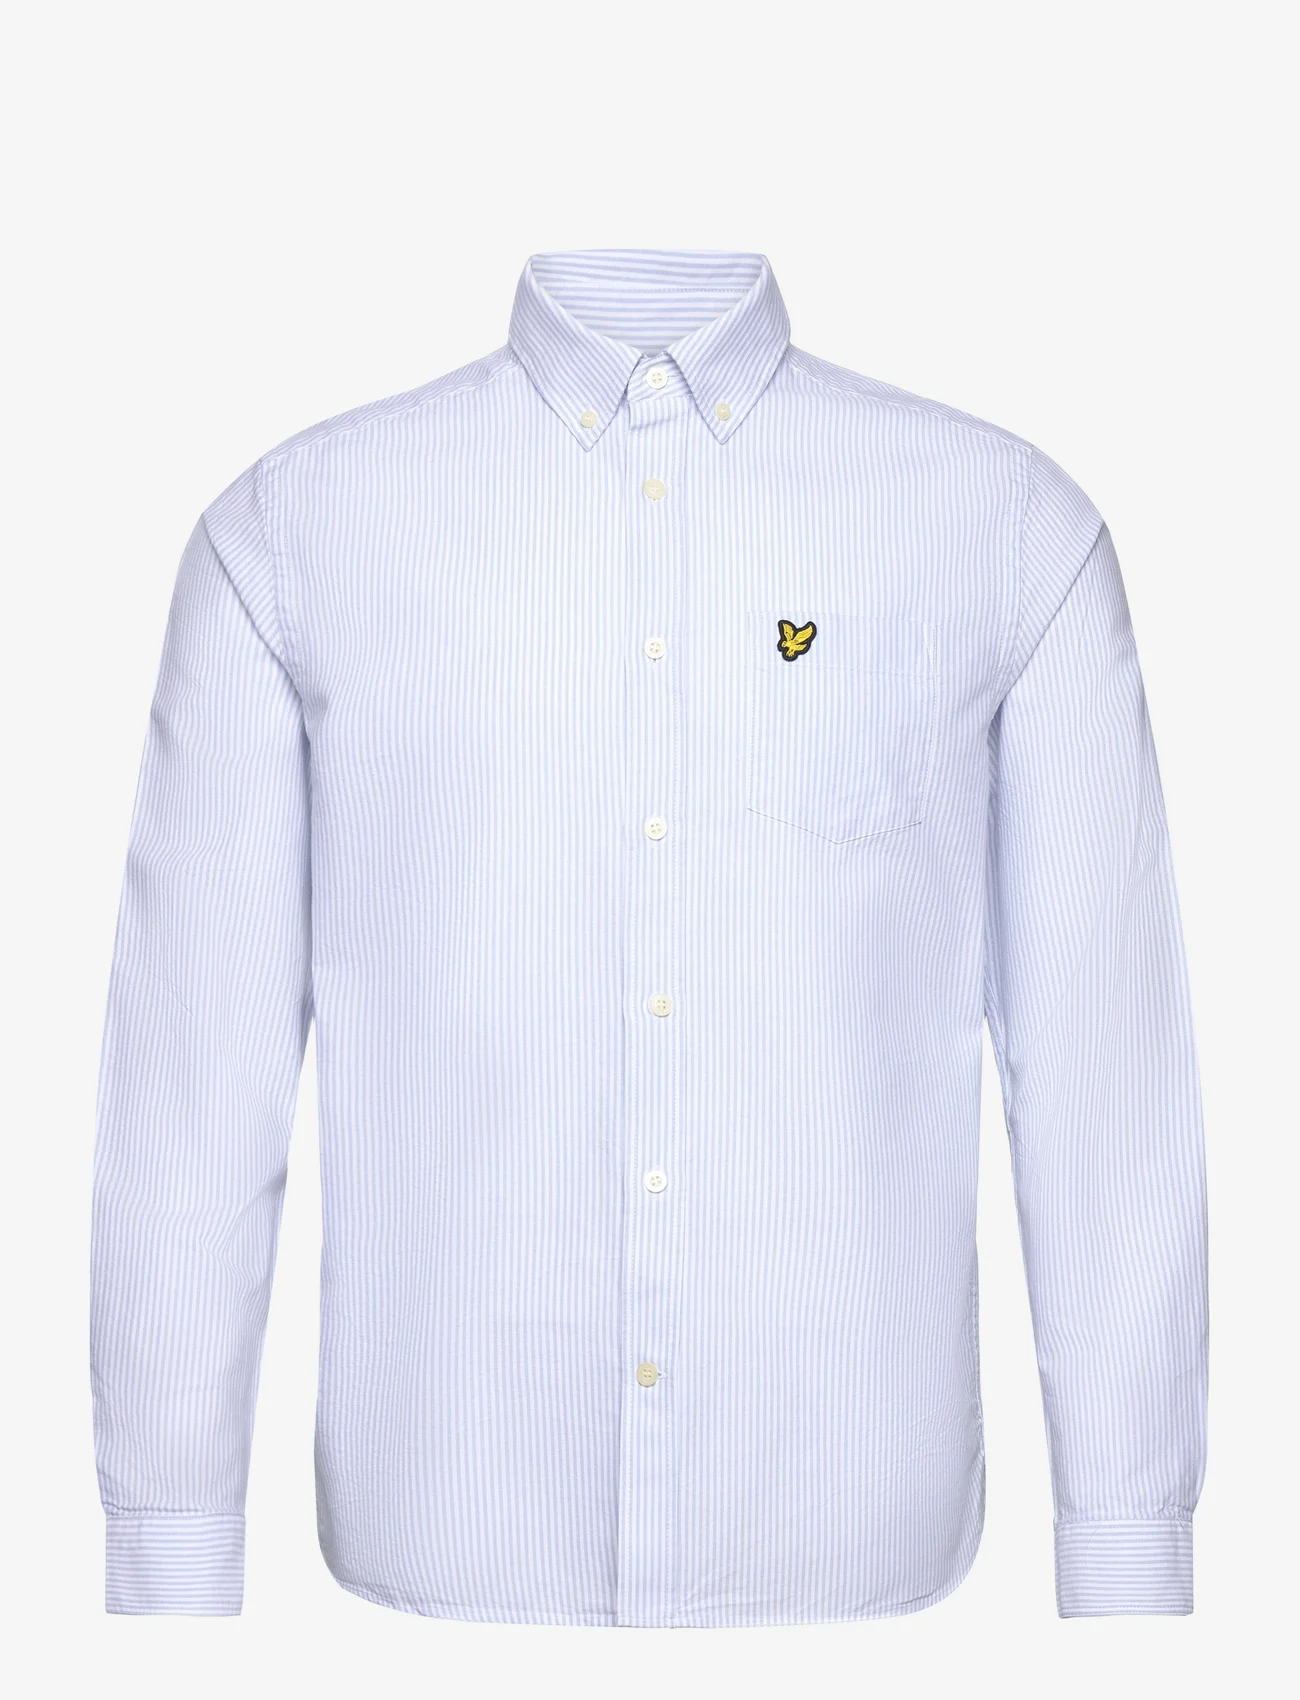 Lyle & Scott - Stripe Oxford Shirt - oxford shirts - w490 light blue/ white - 0